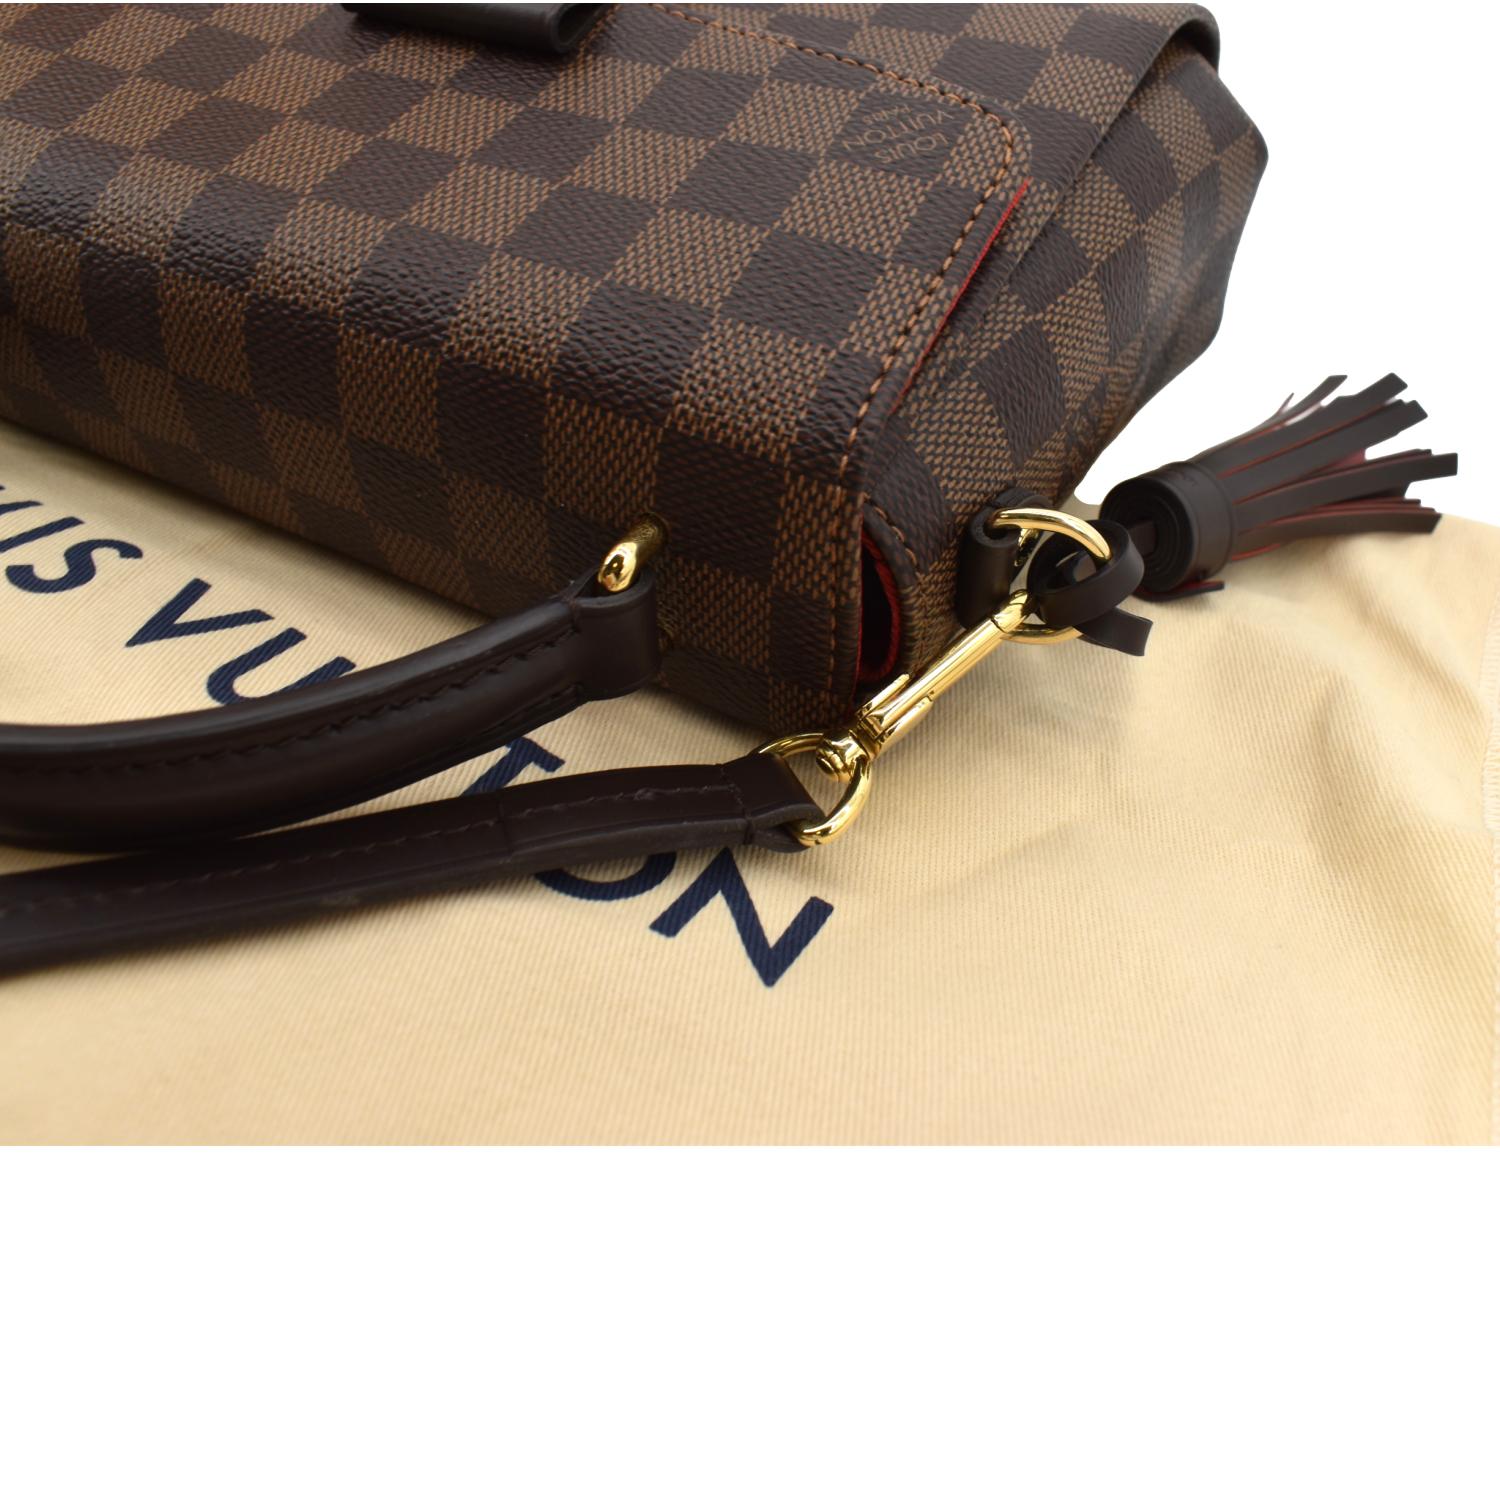 Croisette cloth crossbody bag Louis Vuitton Brown in Cloth - 24630316